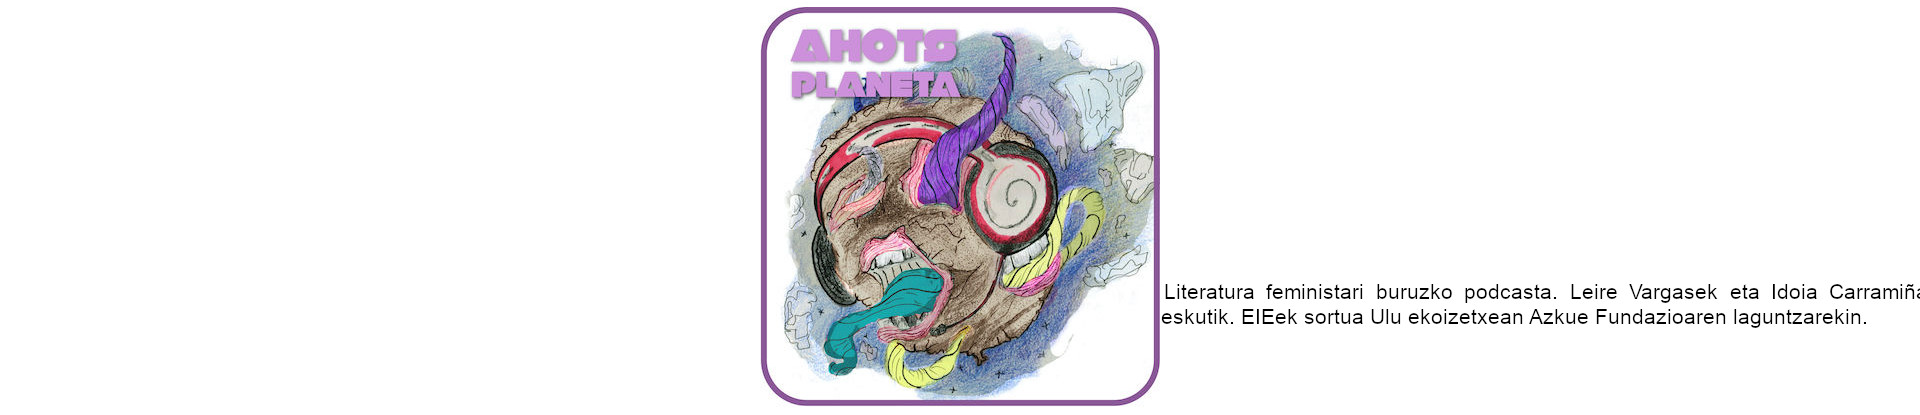 'Ahots planeta' podcasta